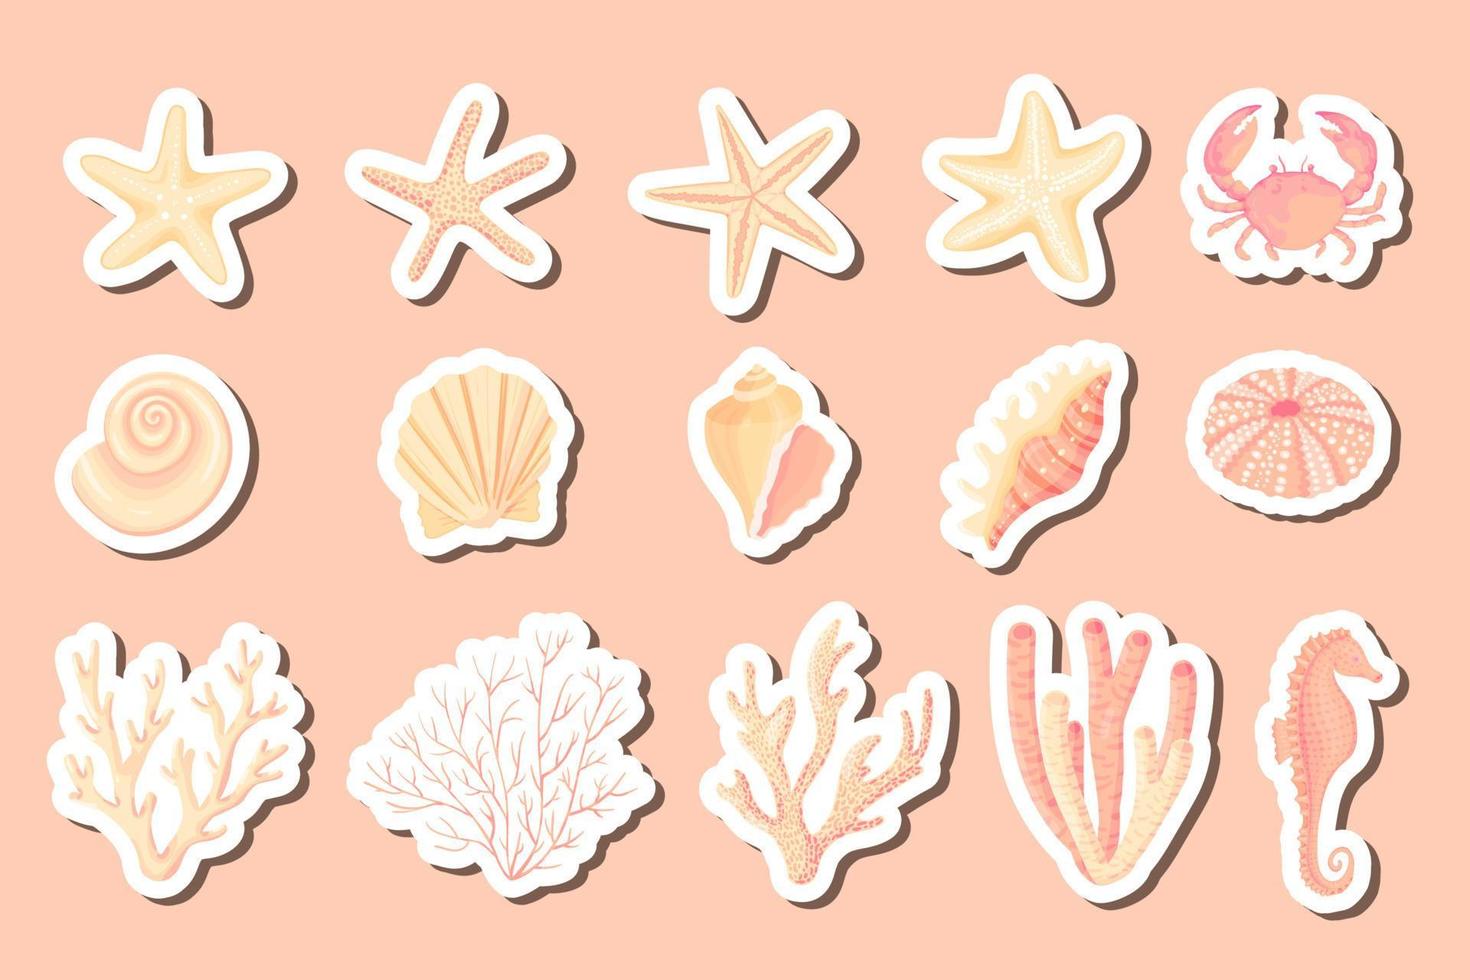 conjunto de vectores de conchas marinas. colección de pegatinas planas de dibujos animados de moluscos, conchas marinas, estrellas de mar, erizos de mar, caballitos de mar, hipocampo, cangrejos, corales. arrecife de coral de moda bajo el agua elementos aislados